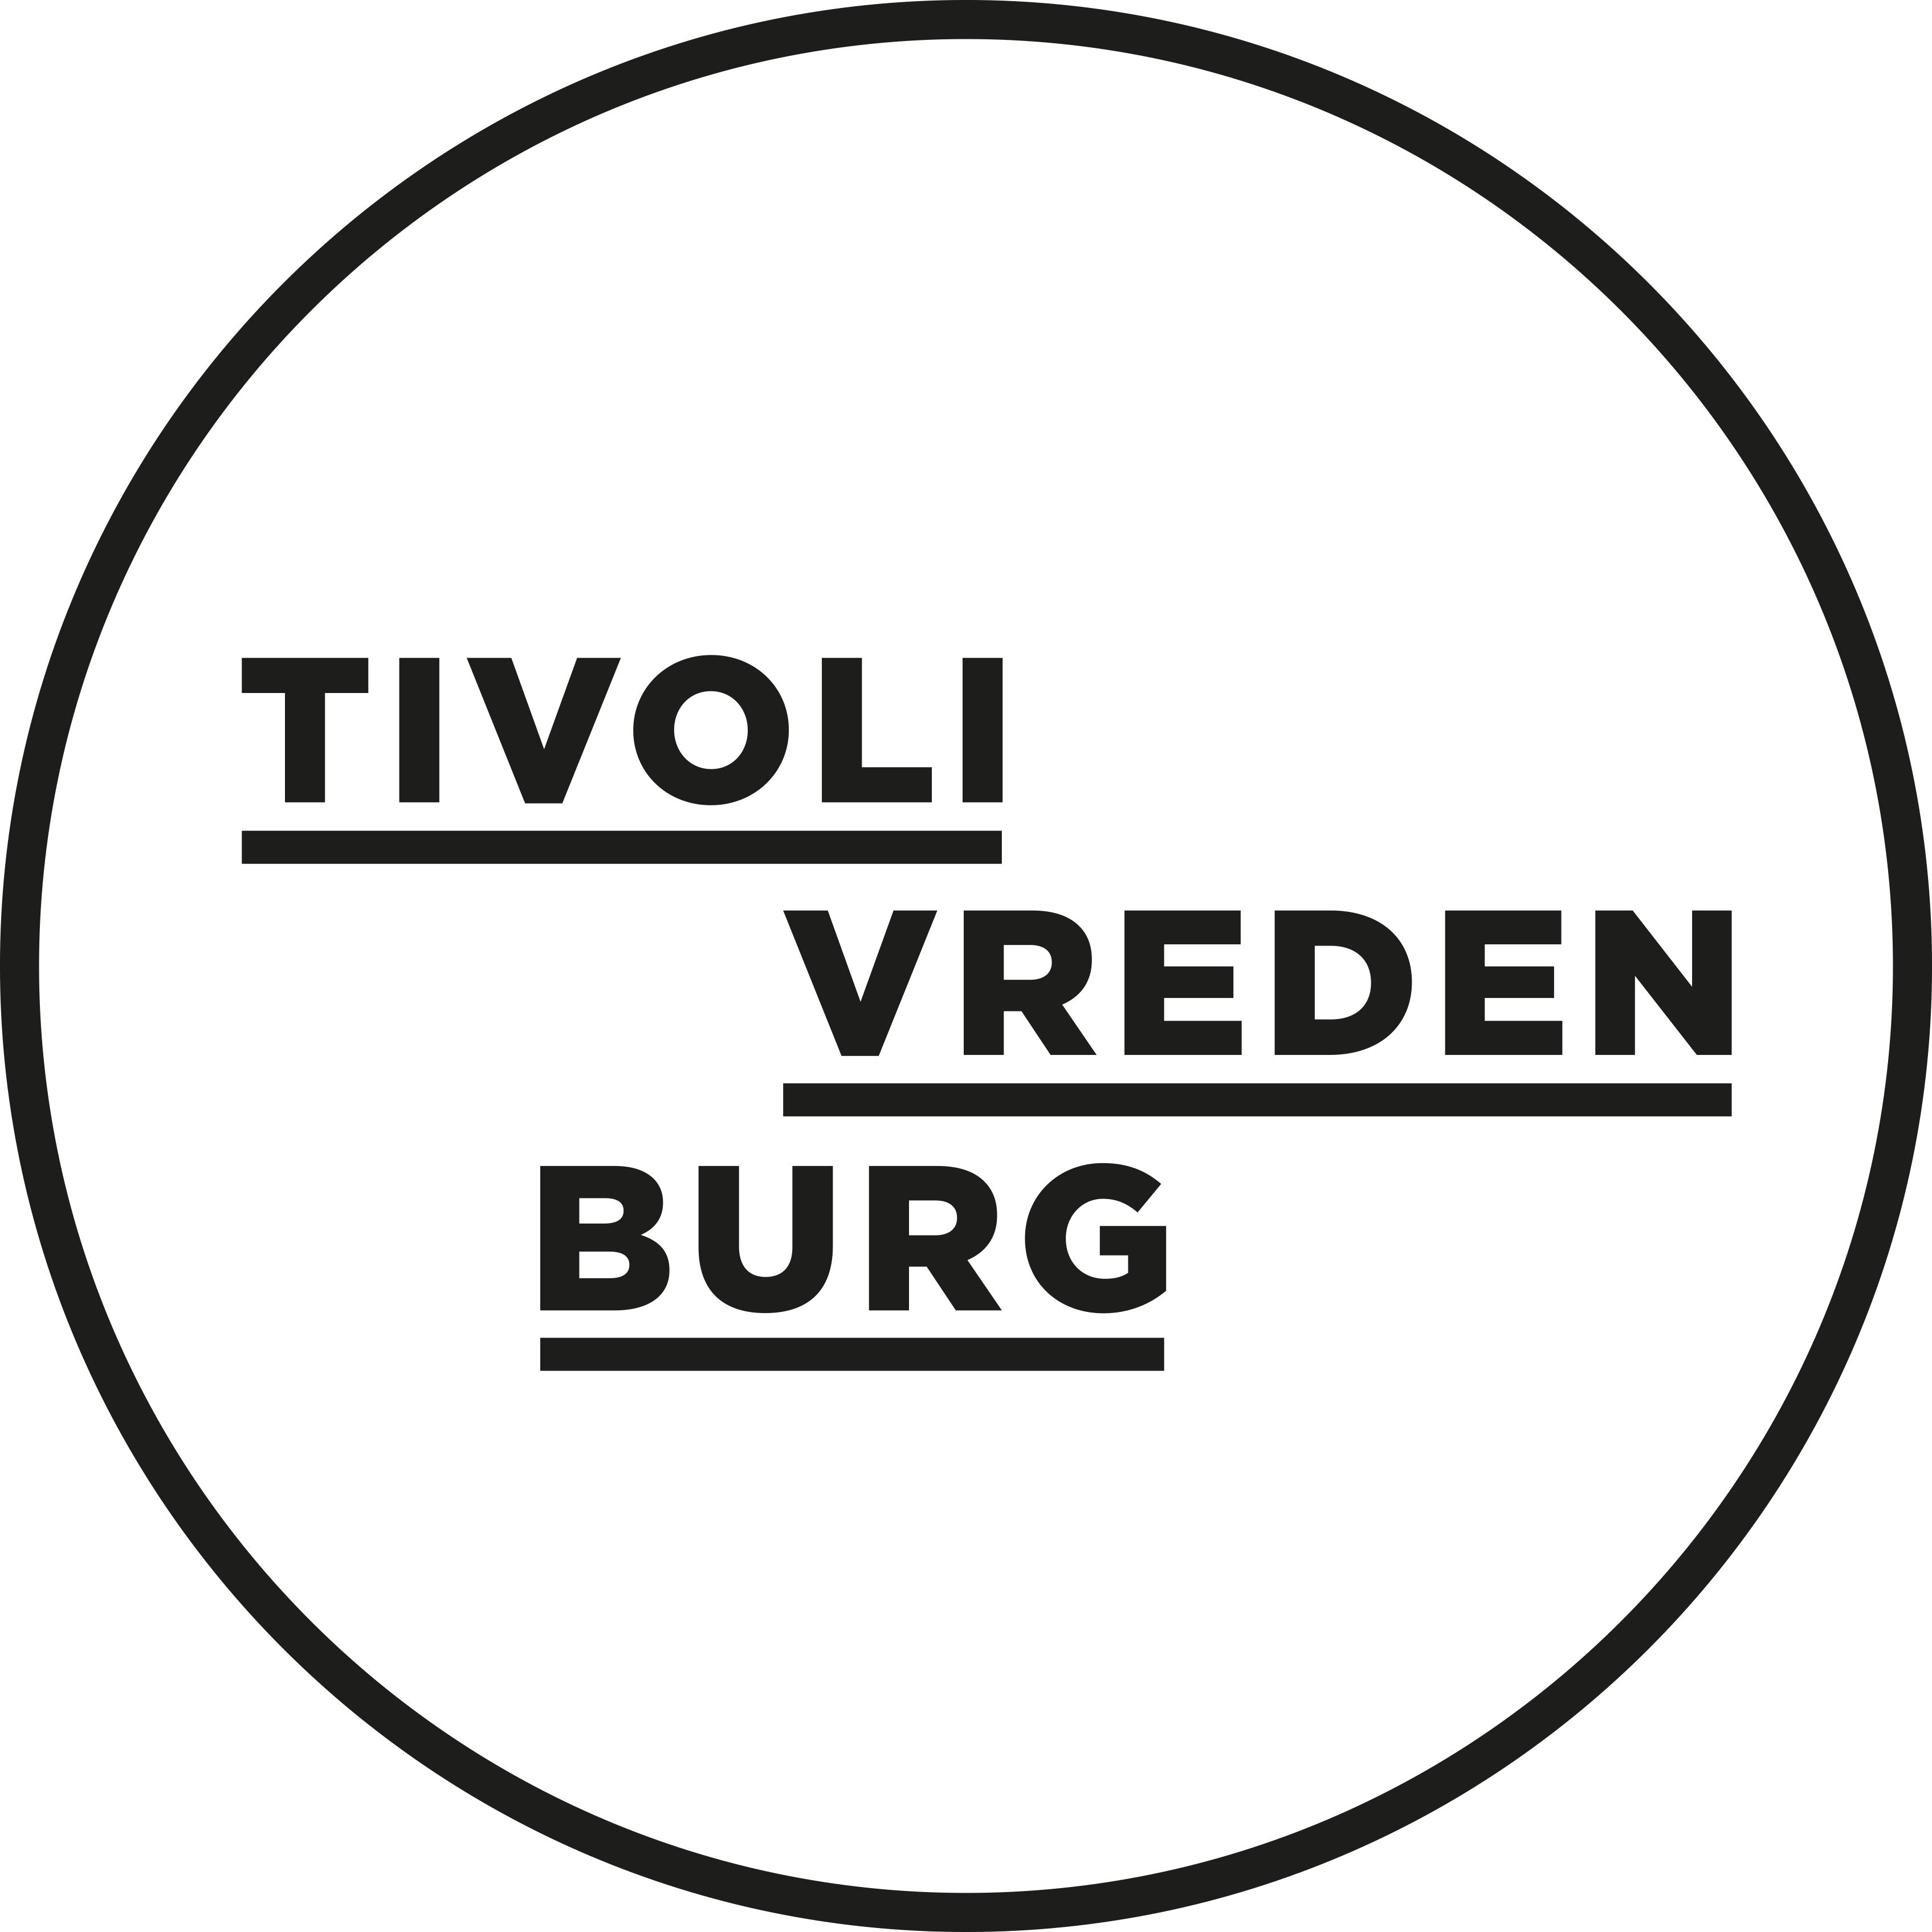 Tivoli Vredenburg